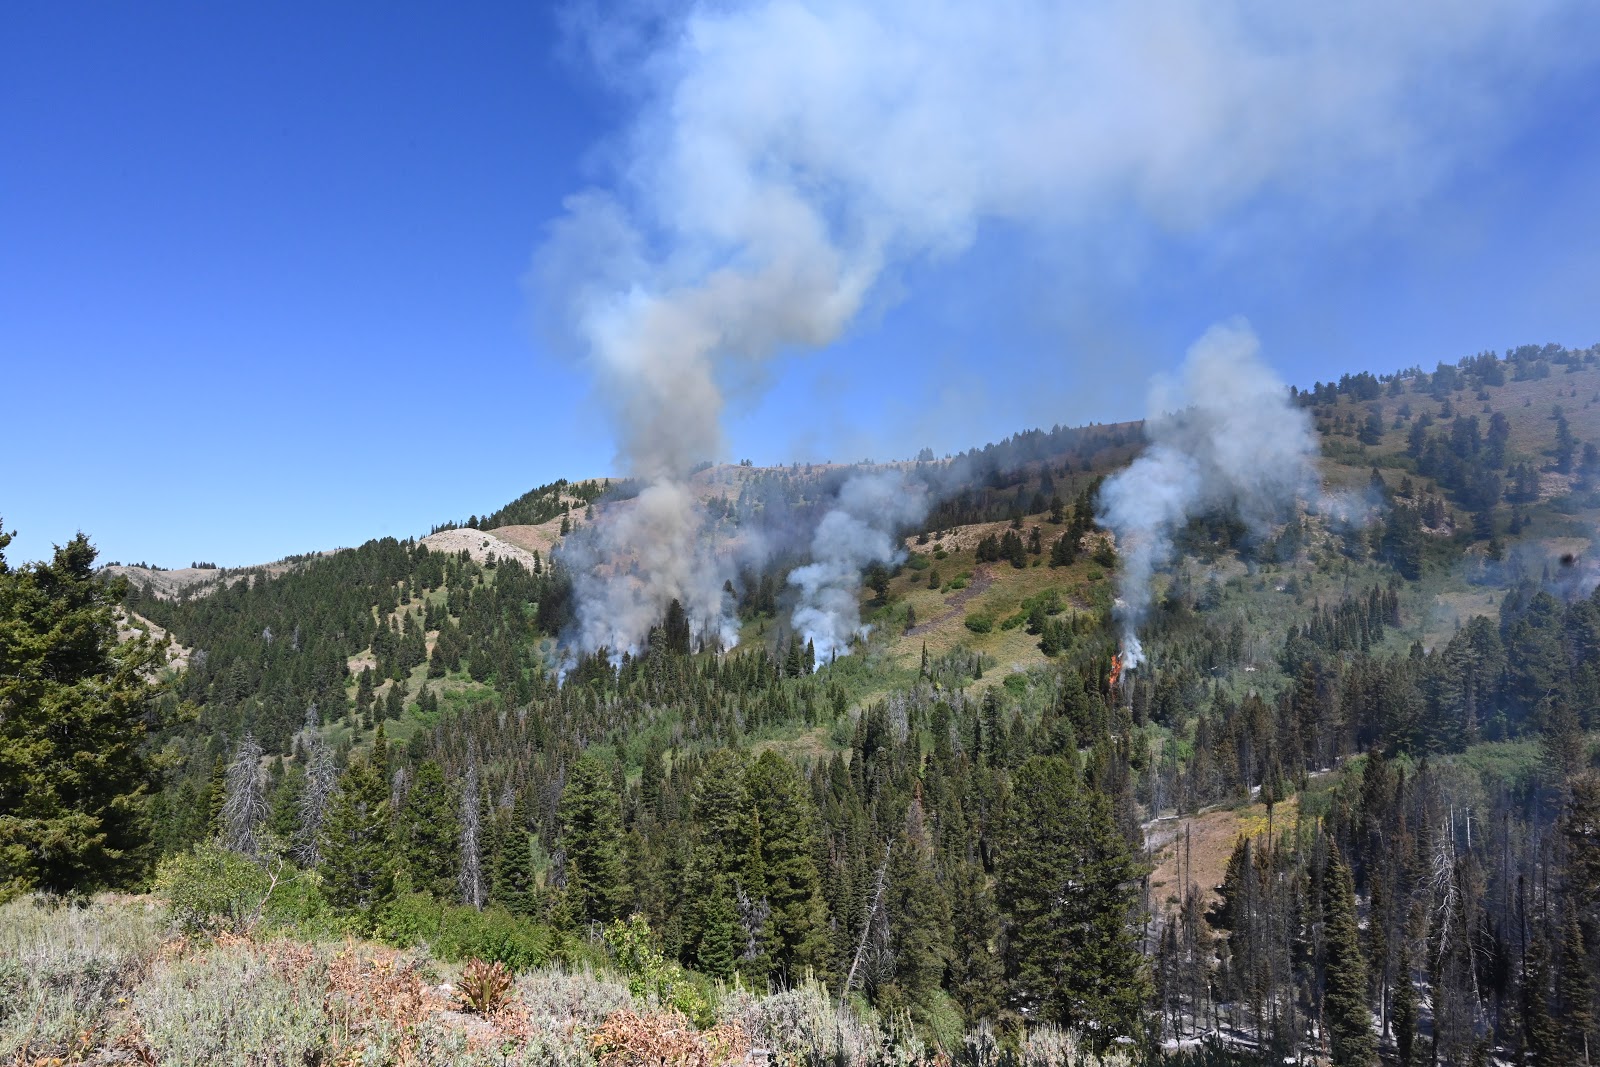 Idaho Fire Information Fall Creek Aspen Restoration Project still